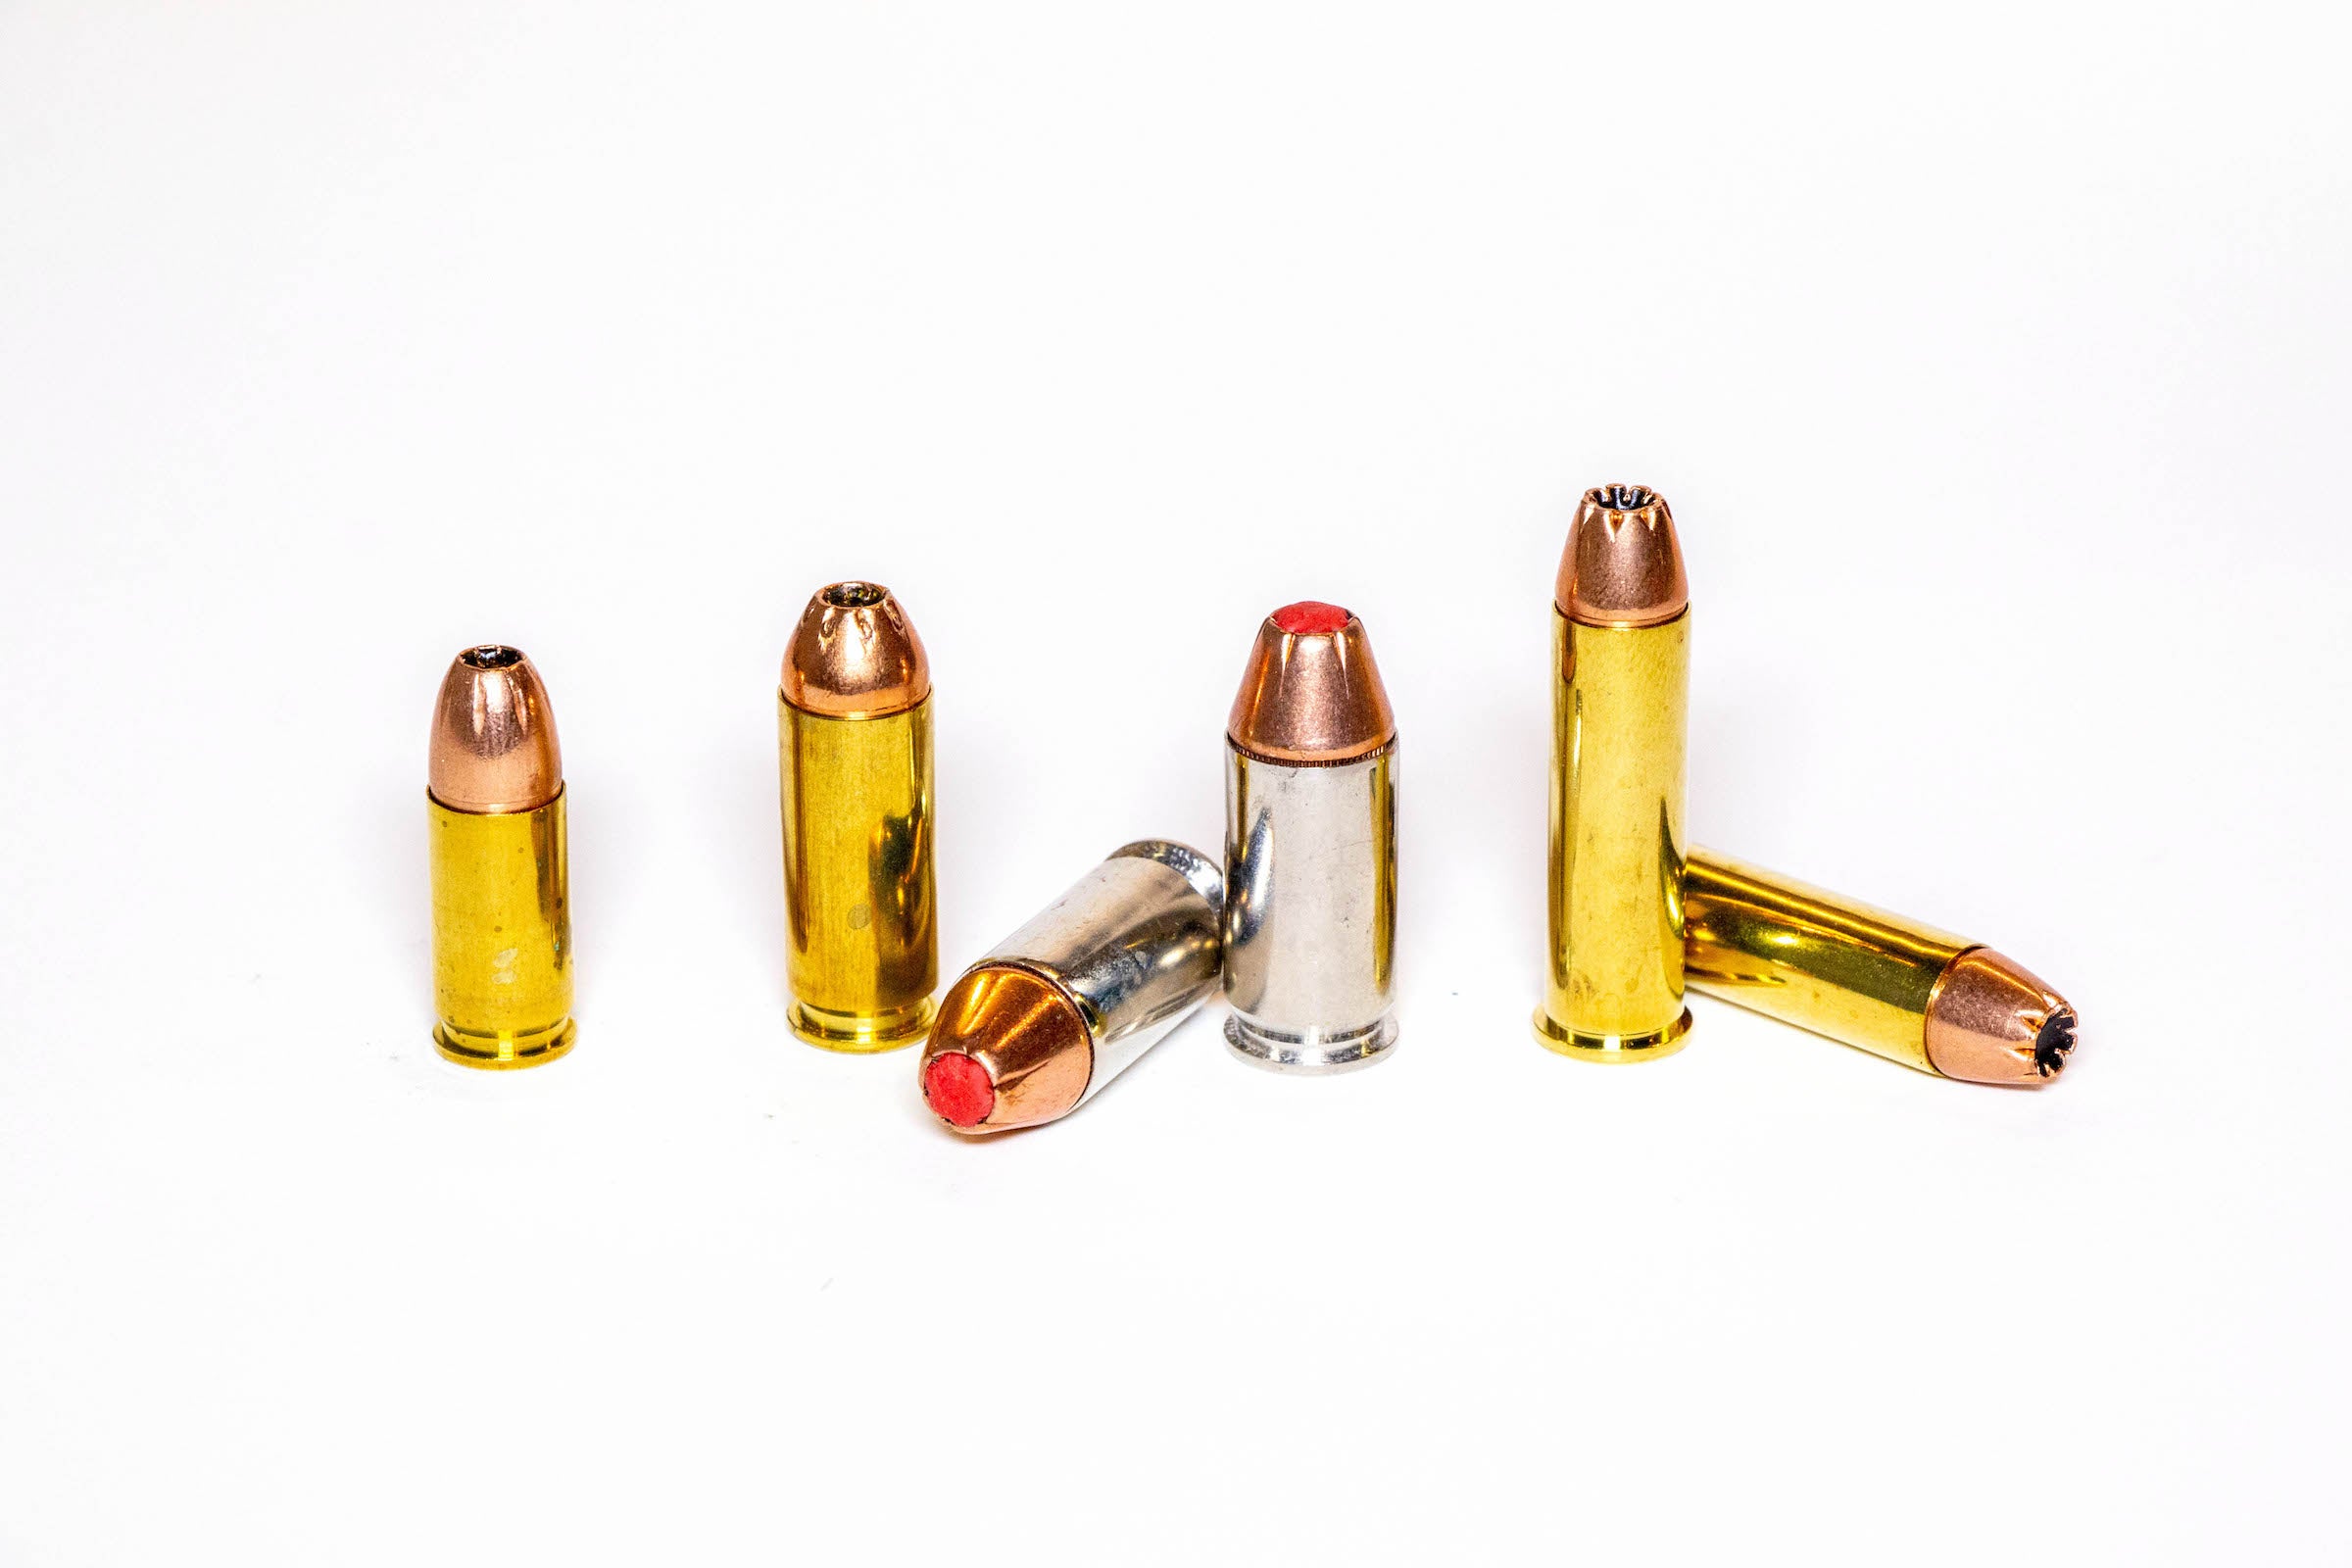 Handgun cartridges on a white background.